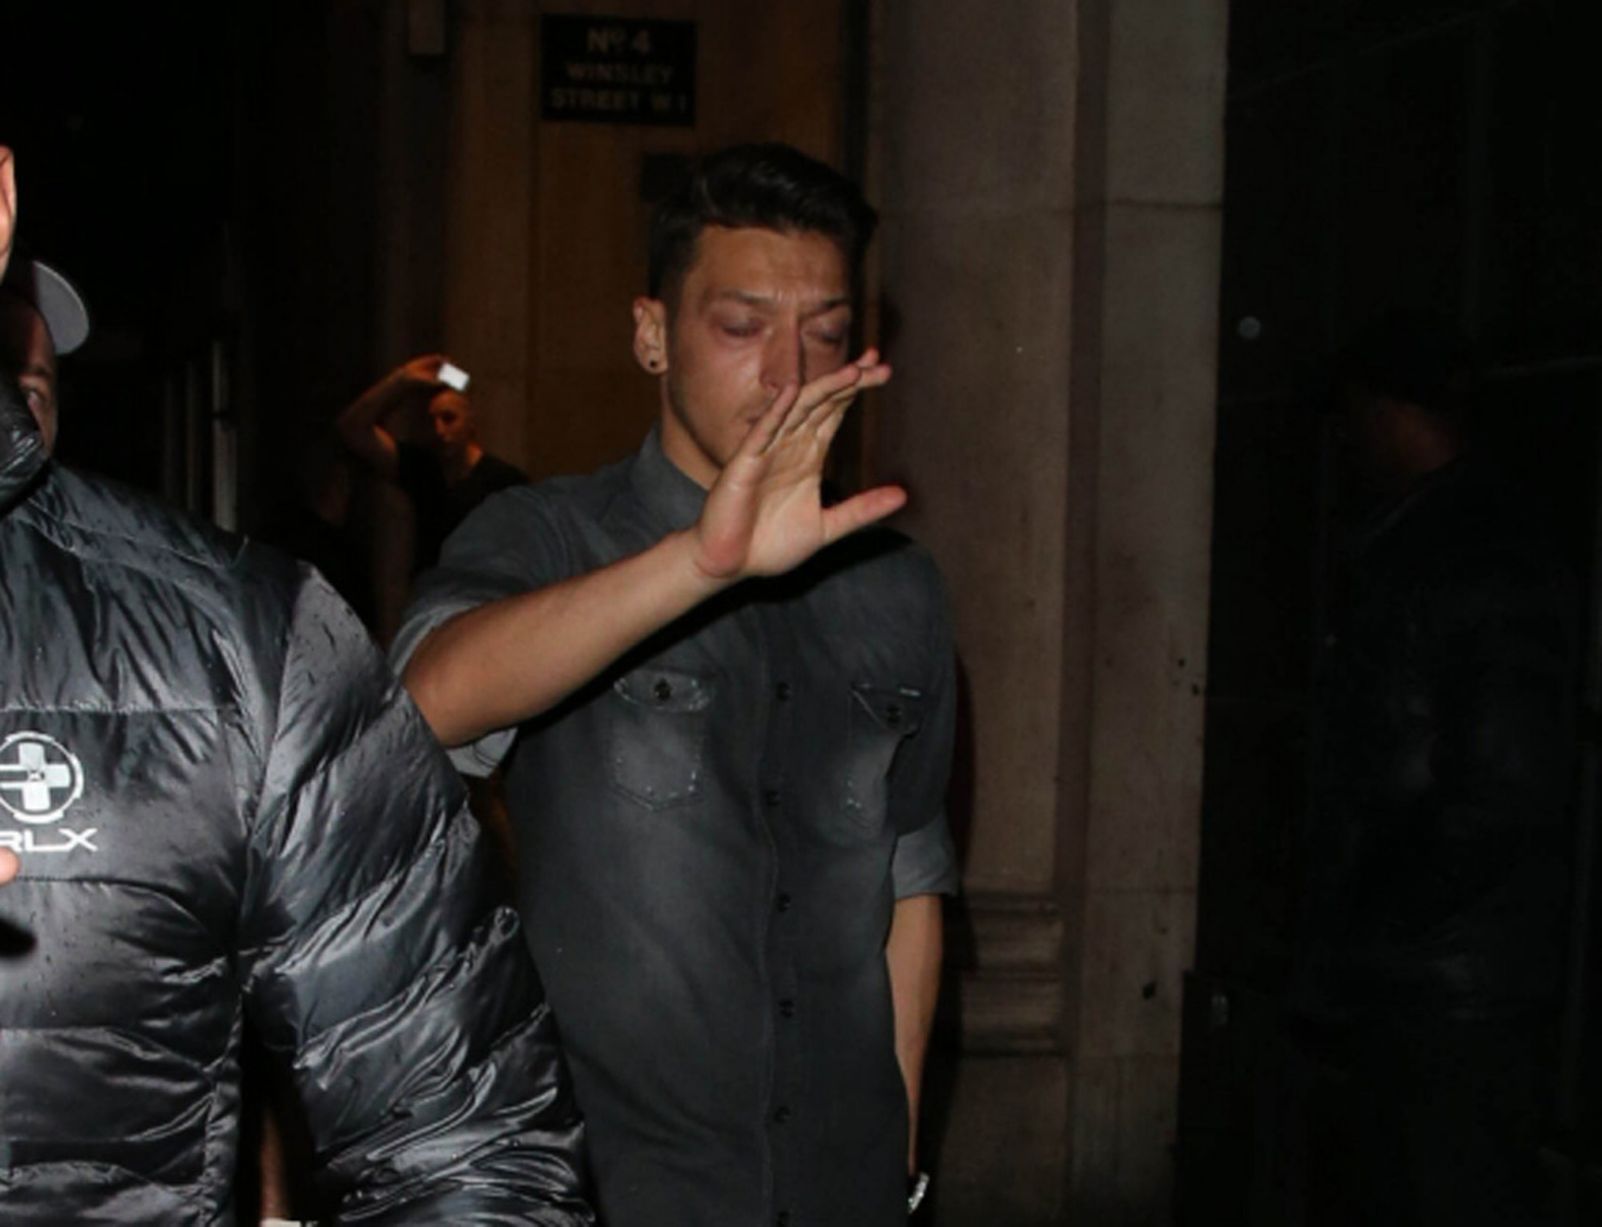 Mesut Ozil leaving nightclub